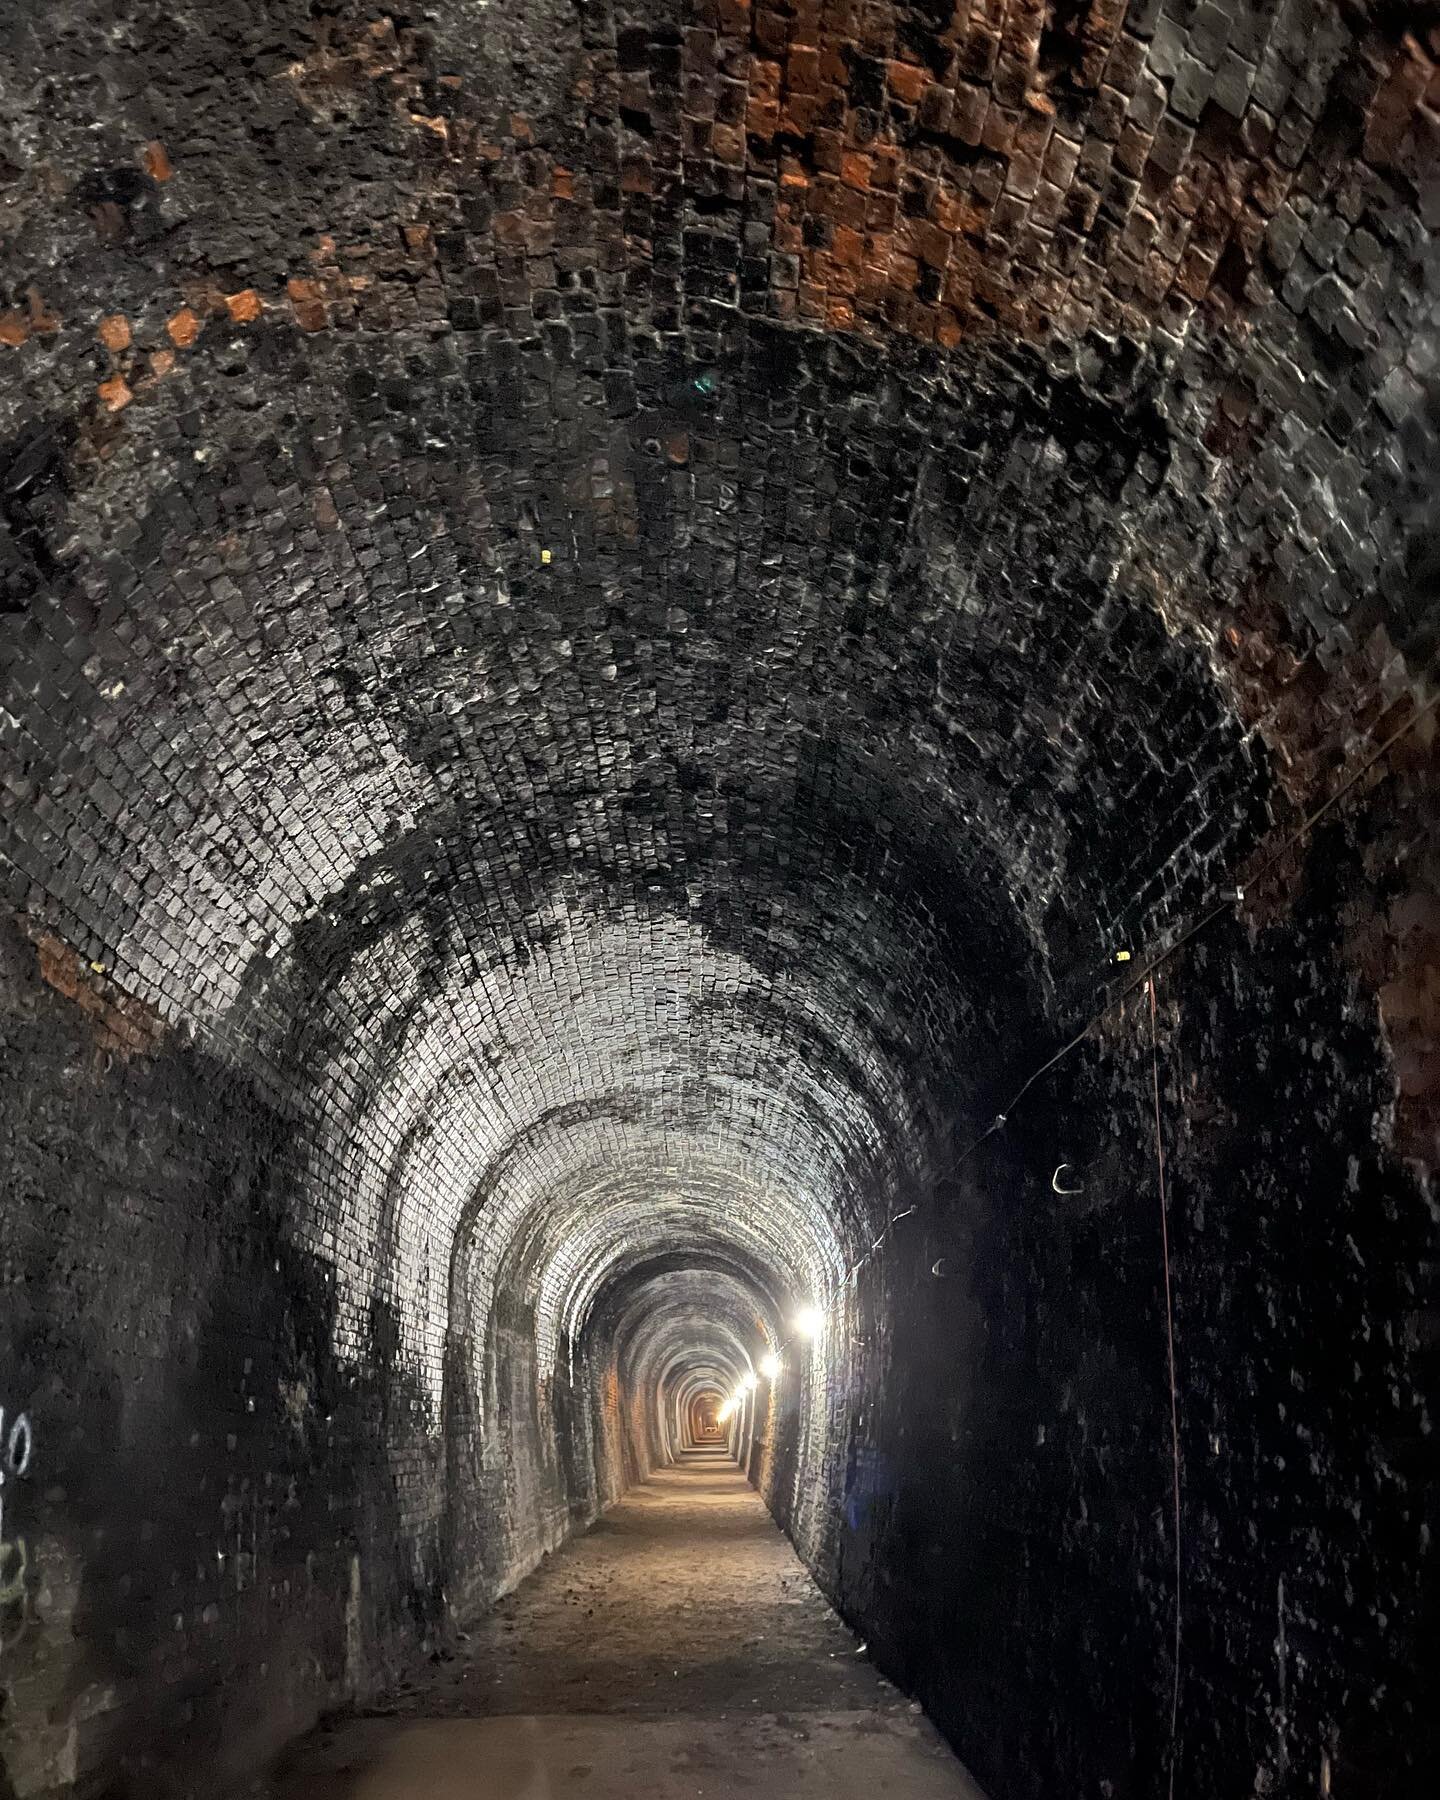 Inside Glenfield tunnel